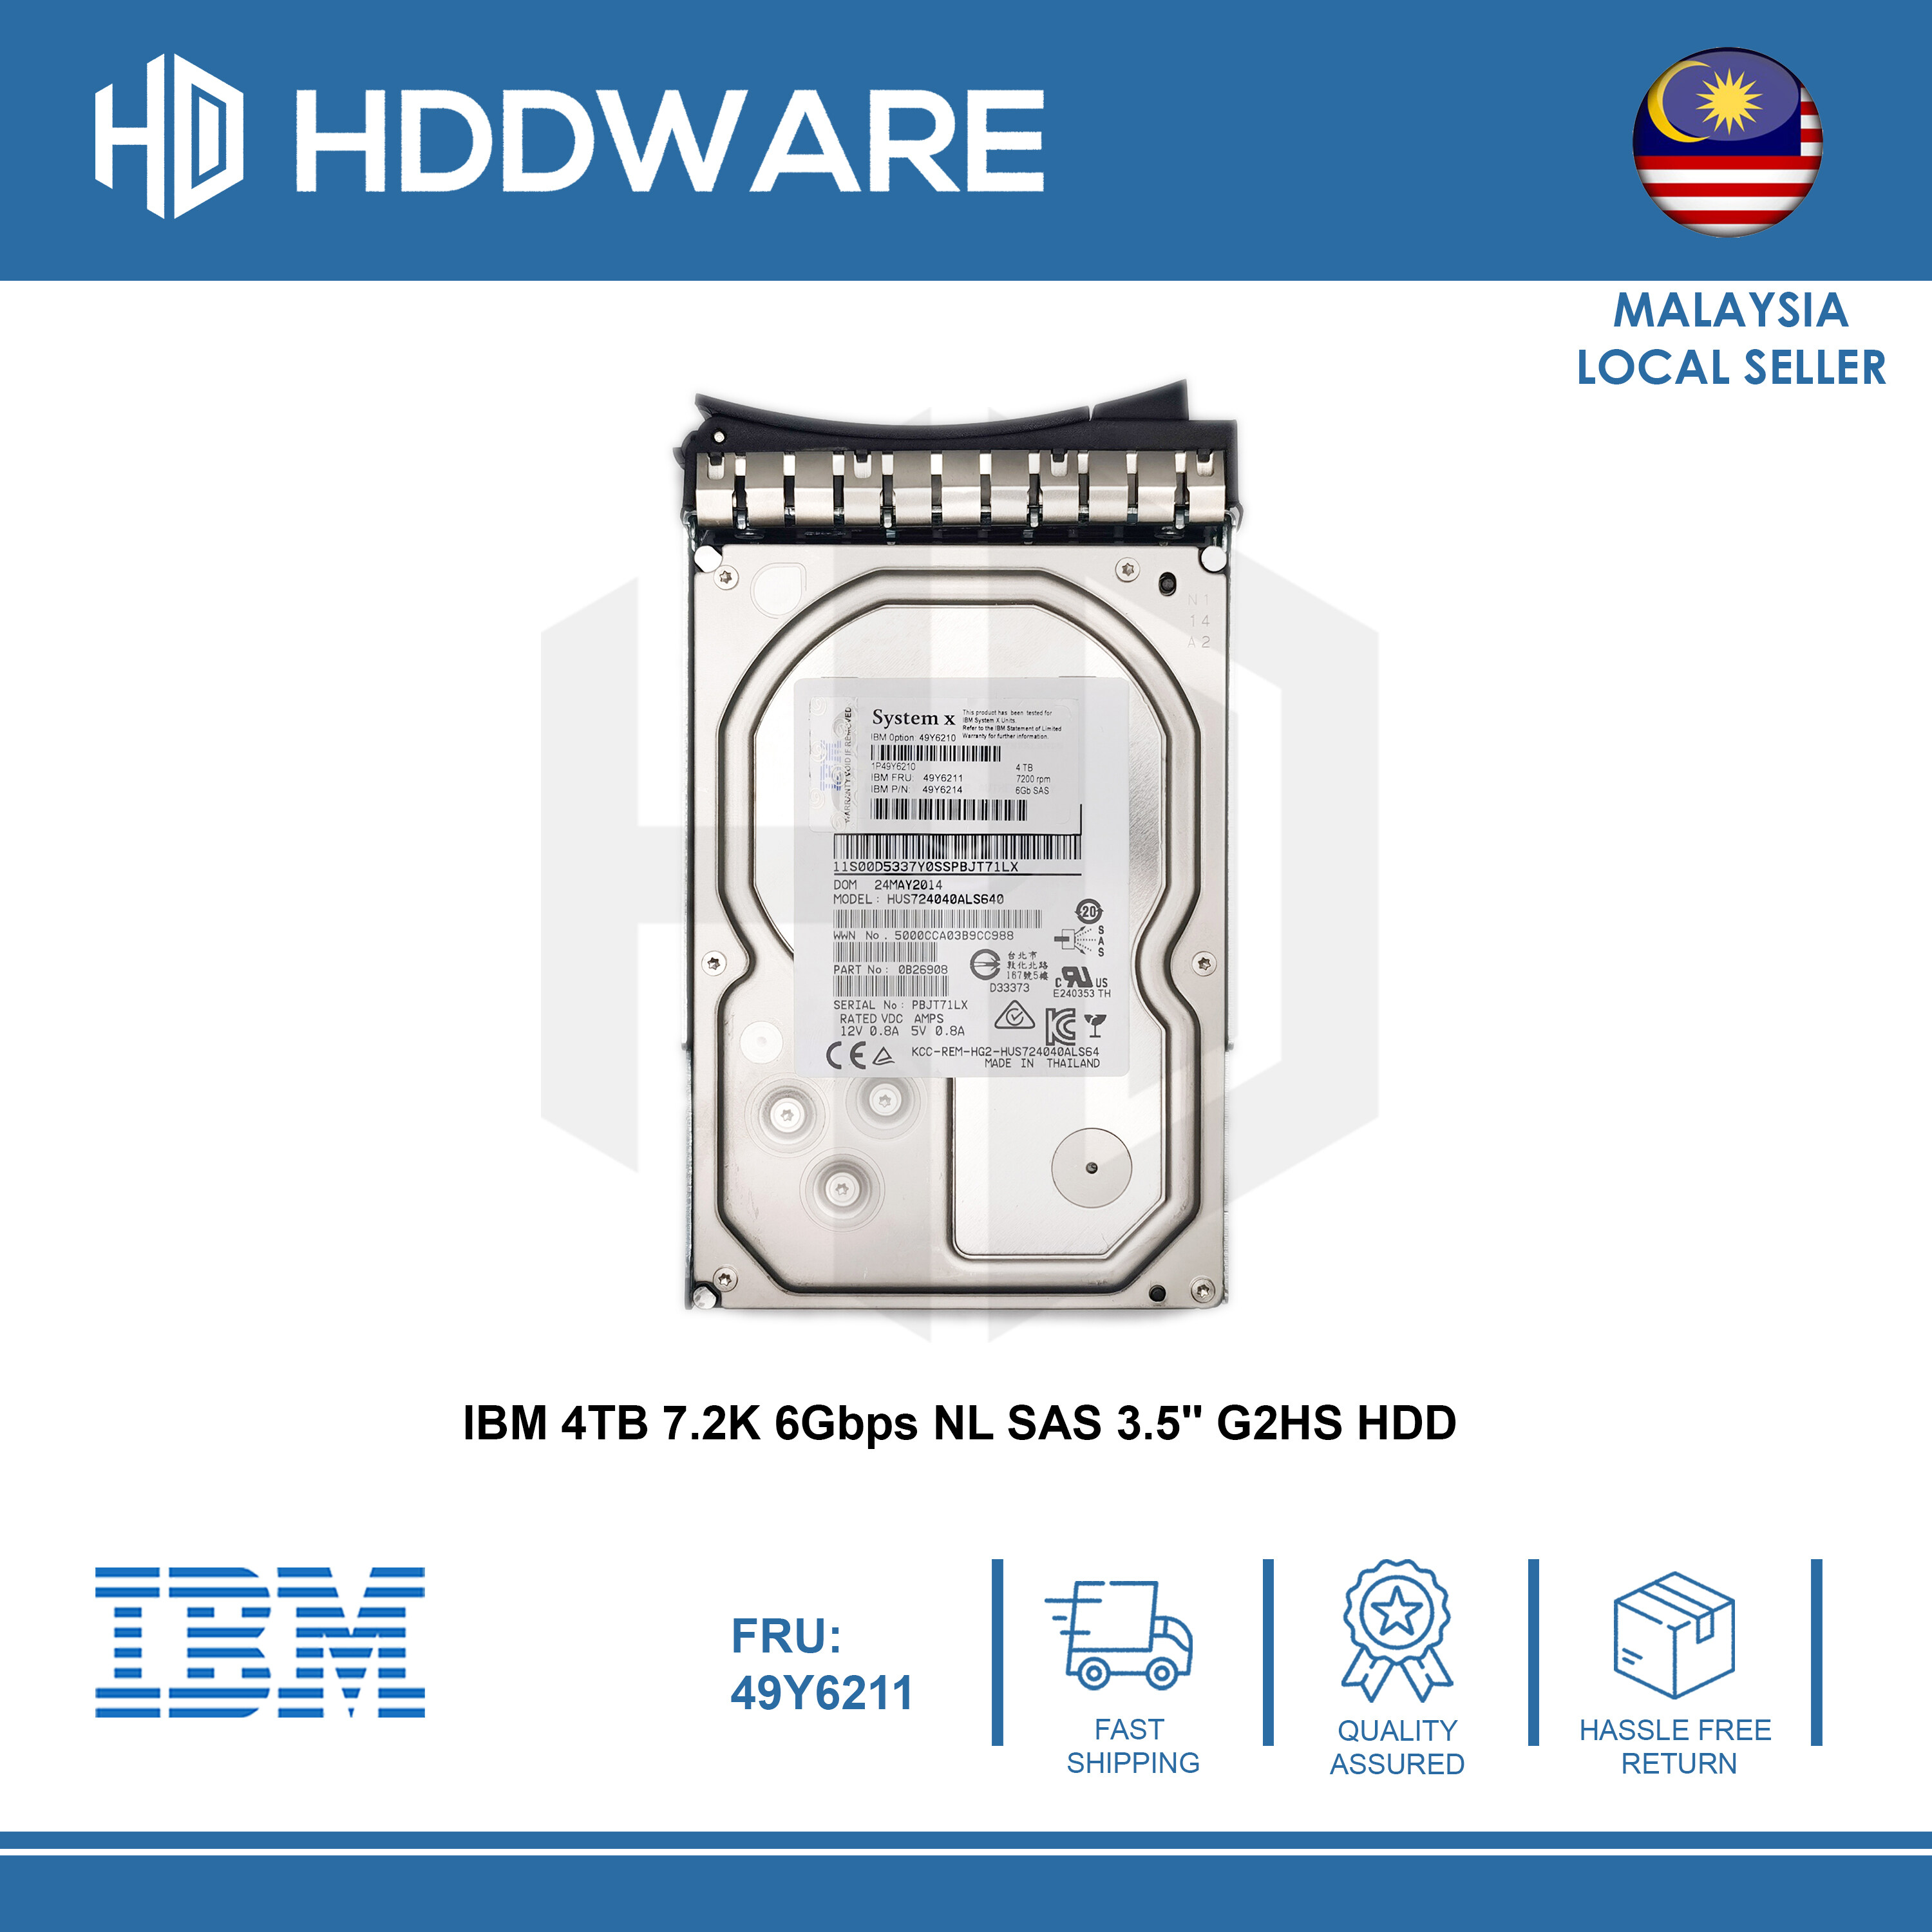 146GB 15K Hot Swap SCSI